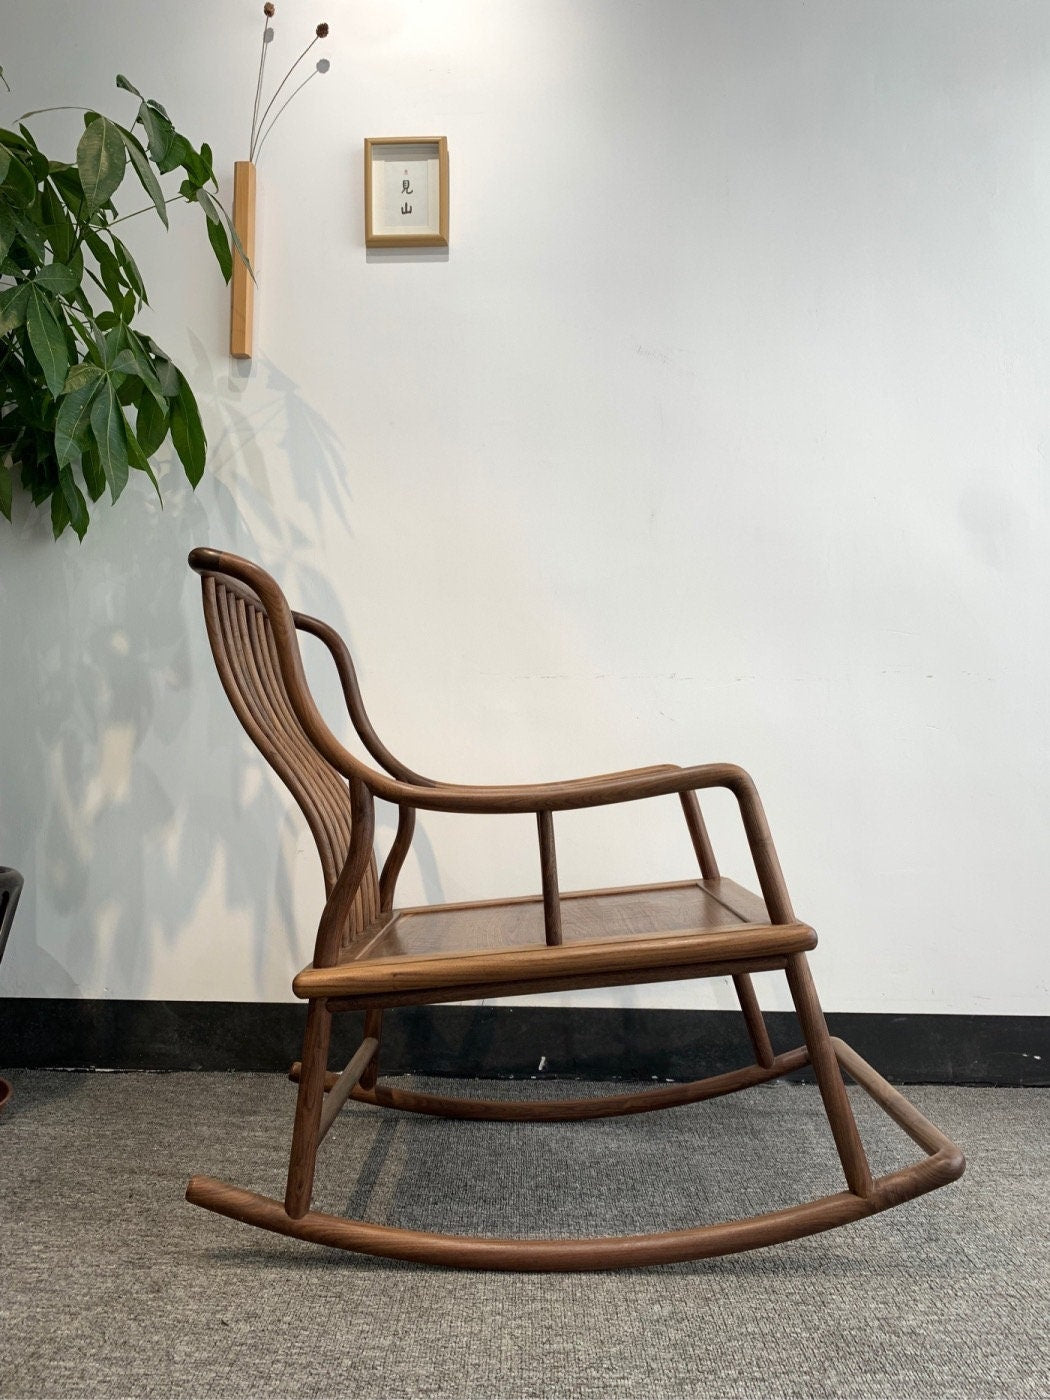 كرسي هزاز من خشب الجوز الأسود الصلب، كرسي من خشب الجوز الأسود الحديث في منتصف القرن، كرسي طعام